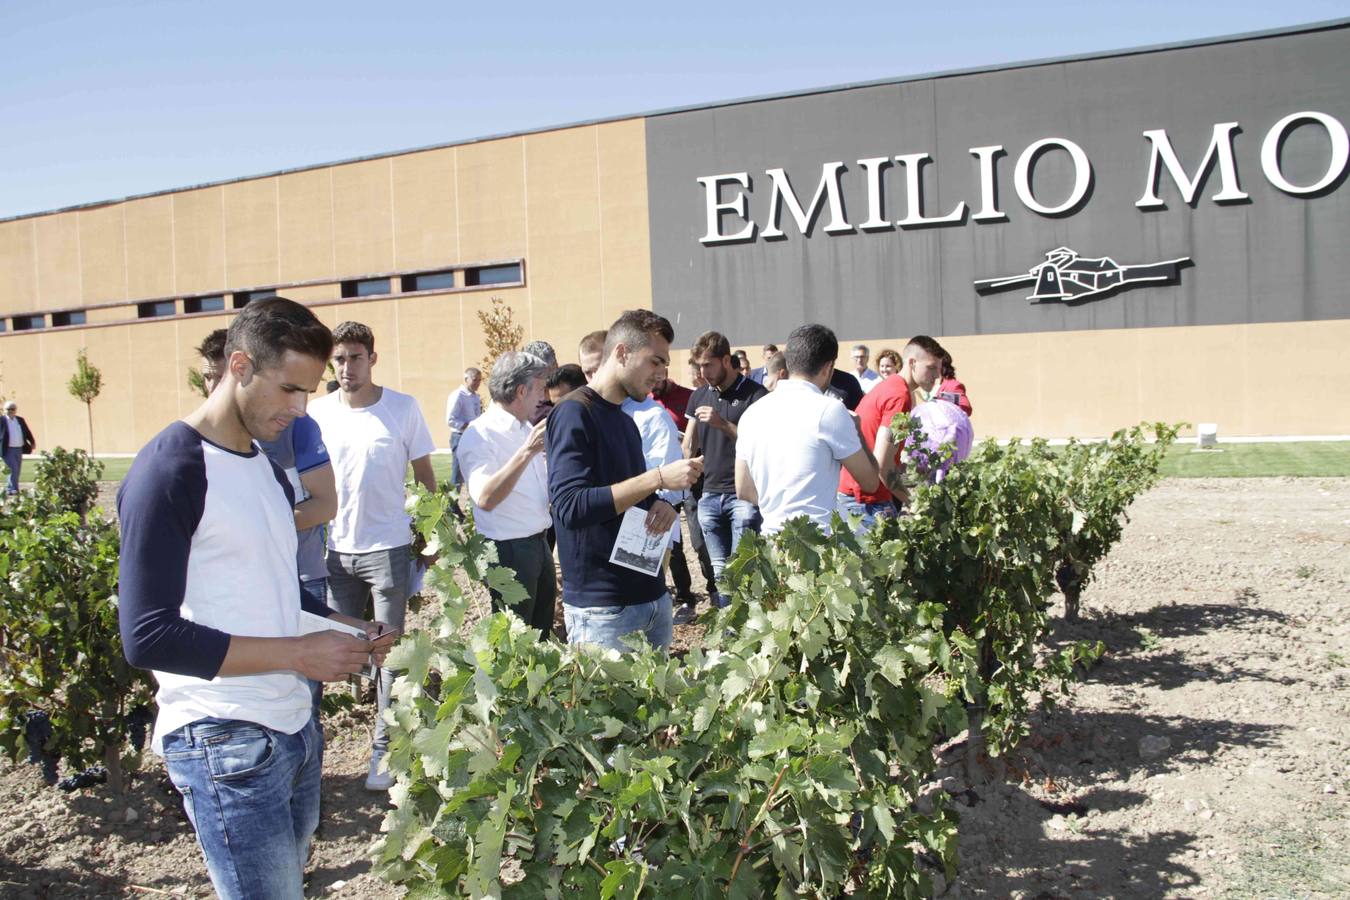 Los jugadores del Real Valladolid apadrinan una cepa solidaria en los viñedos de Emilio Moro